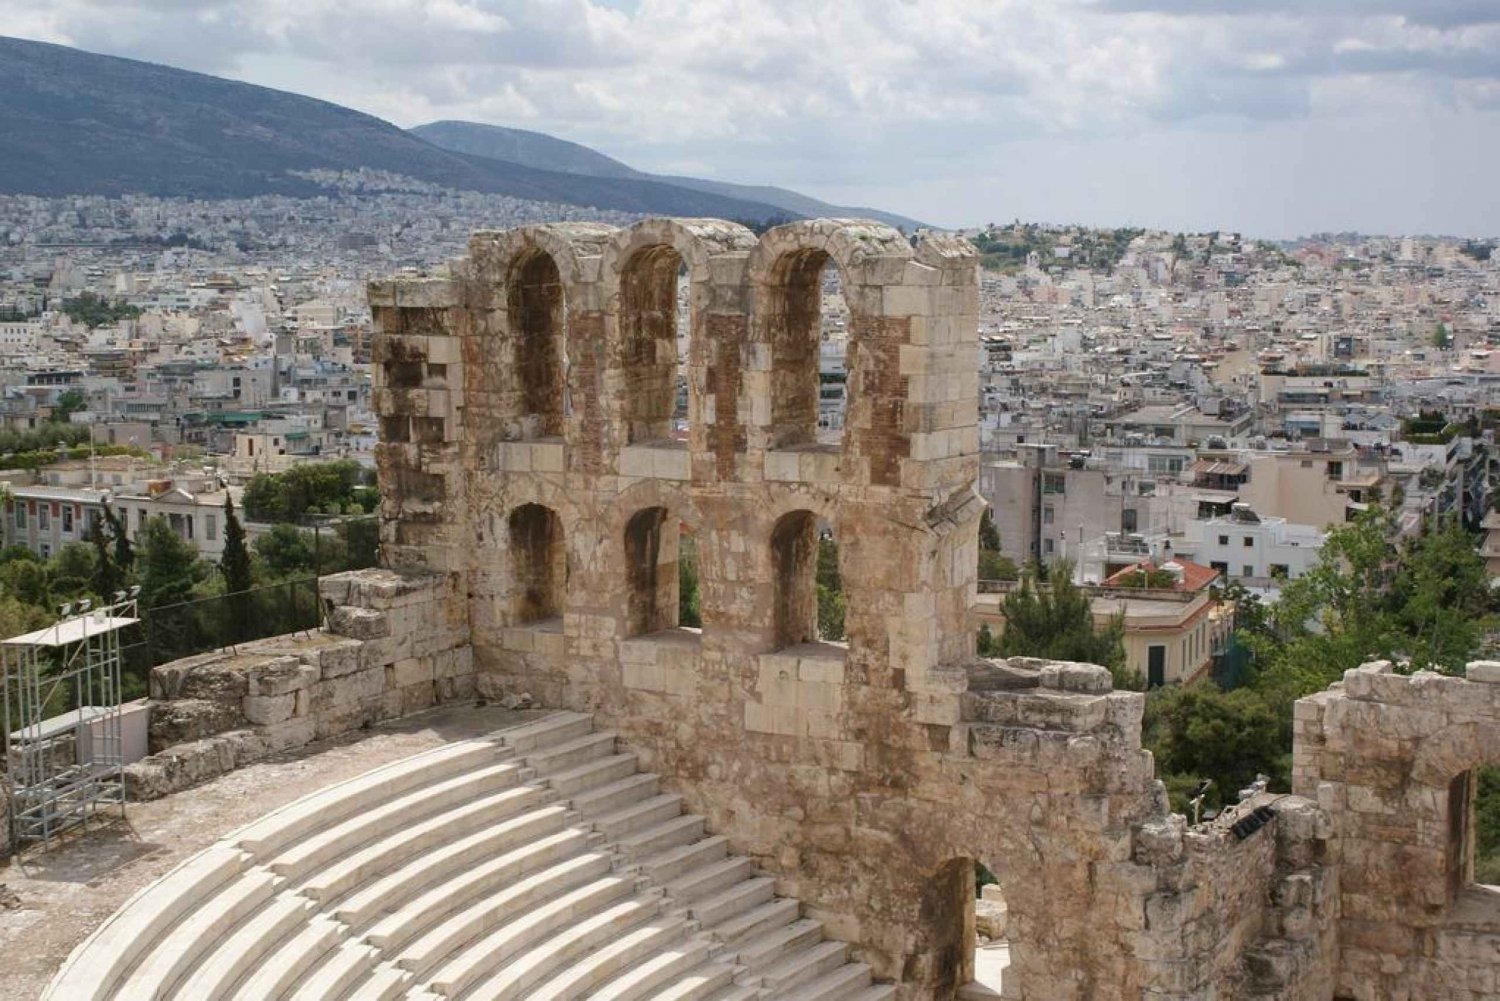 Athen: halbtägige private Stadtrundfahrt